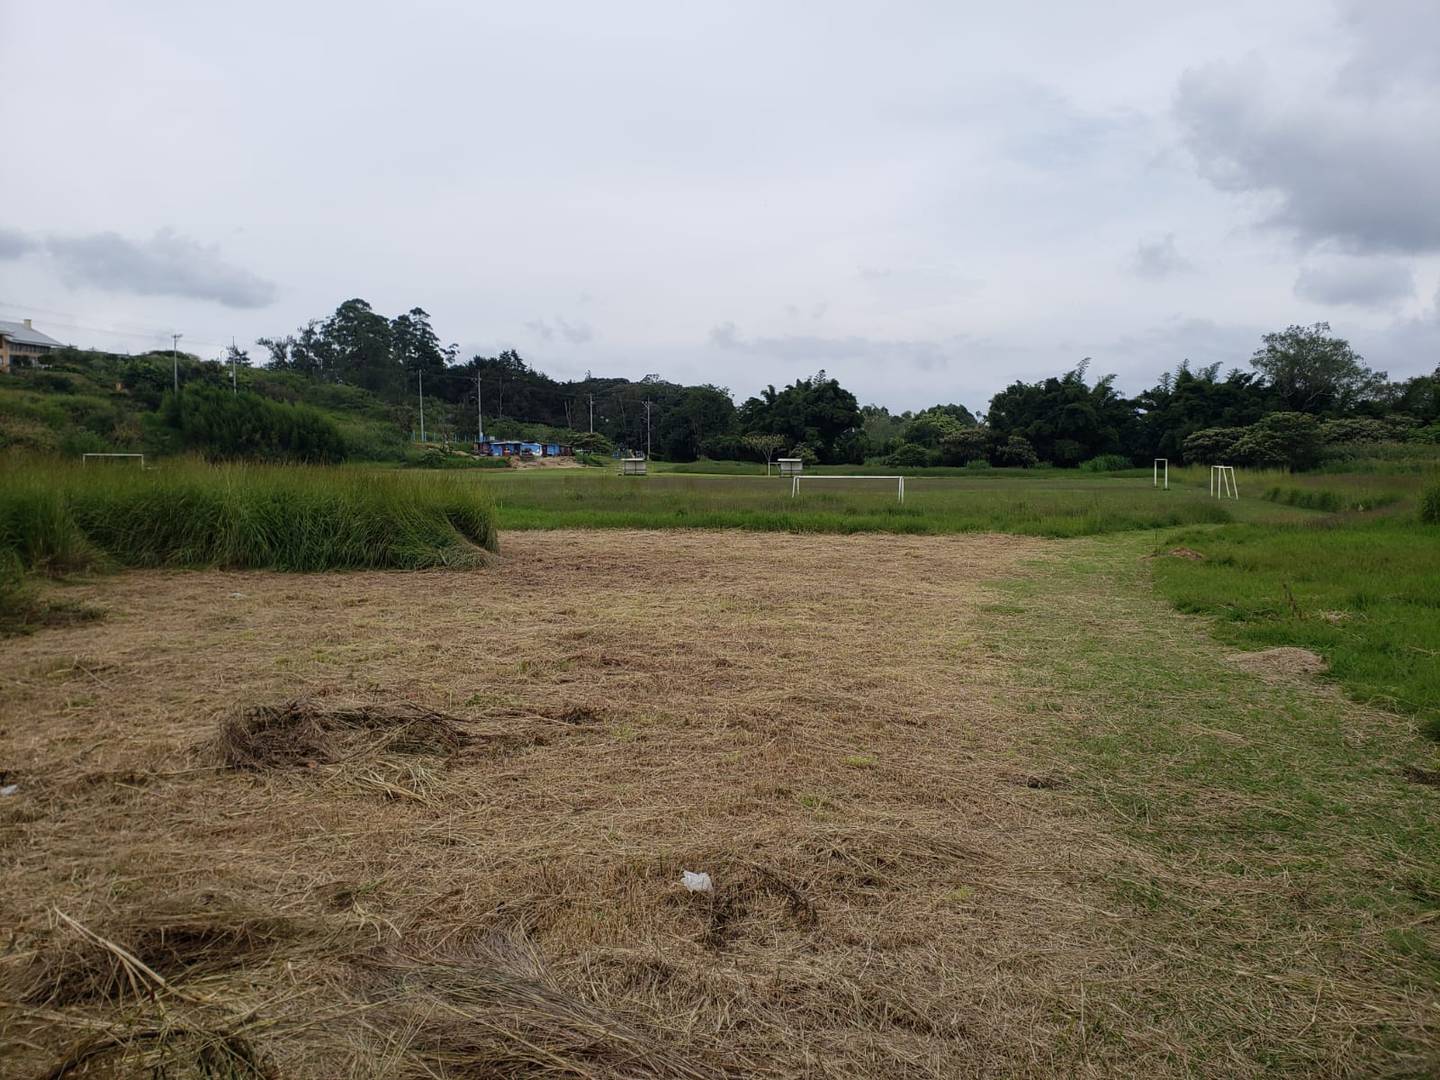 Actualmente en los terrenos de la Escuela Laboratorio de Deportes de Cartago solo hay una cancha natural. El terreno no cuenta con ningún otro tipo de facilidad aún.